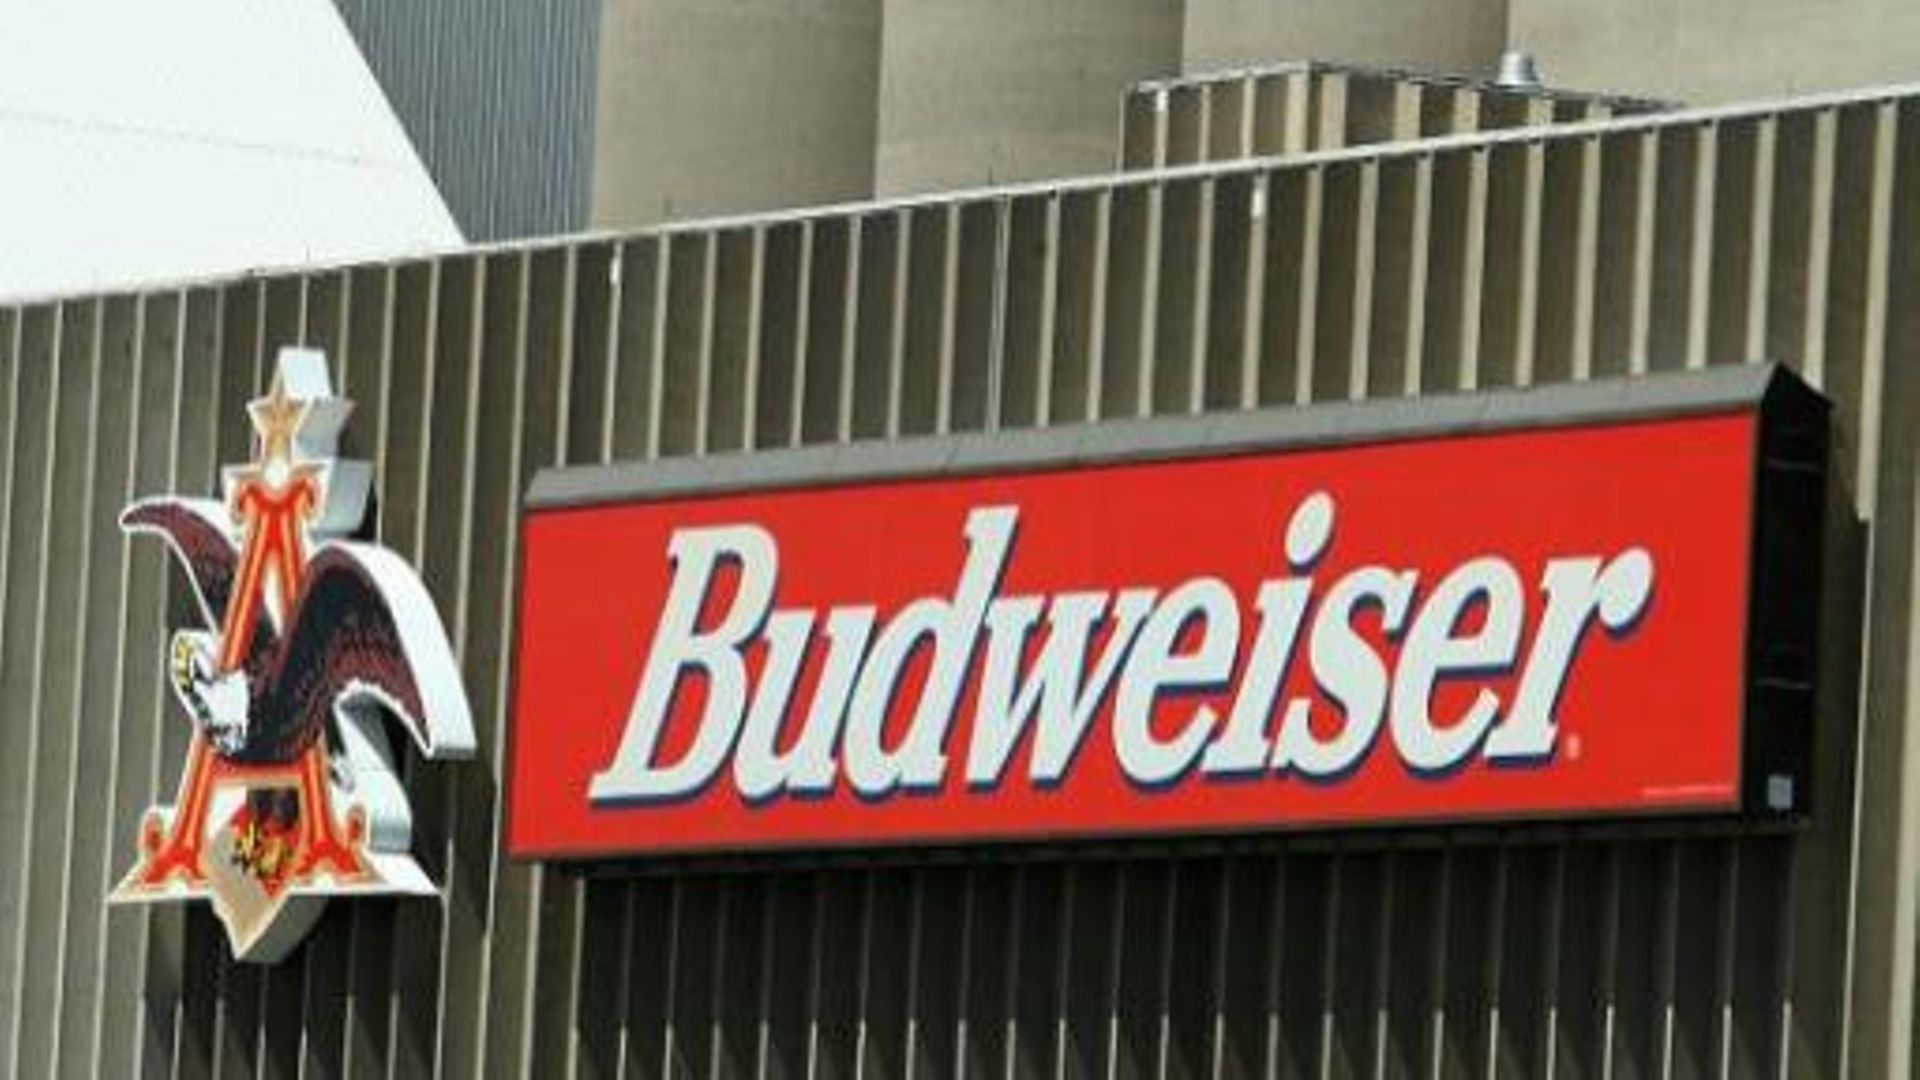 Les bières Budweiser sont-elles coupées ? Des consommateurs le pensent et attaquent la firme, filiale de ABInbev